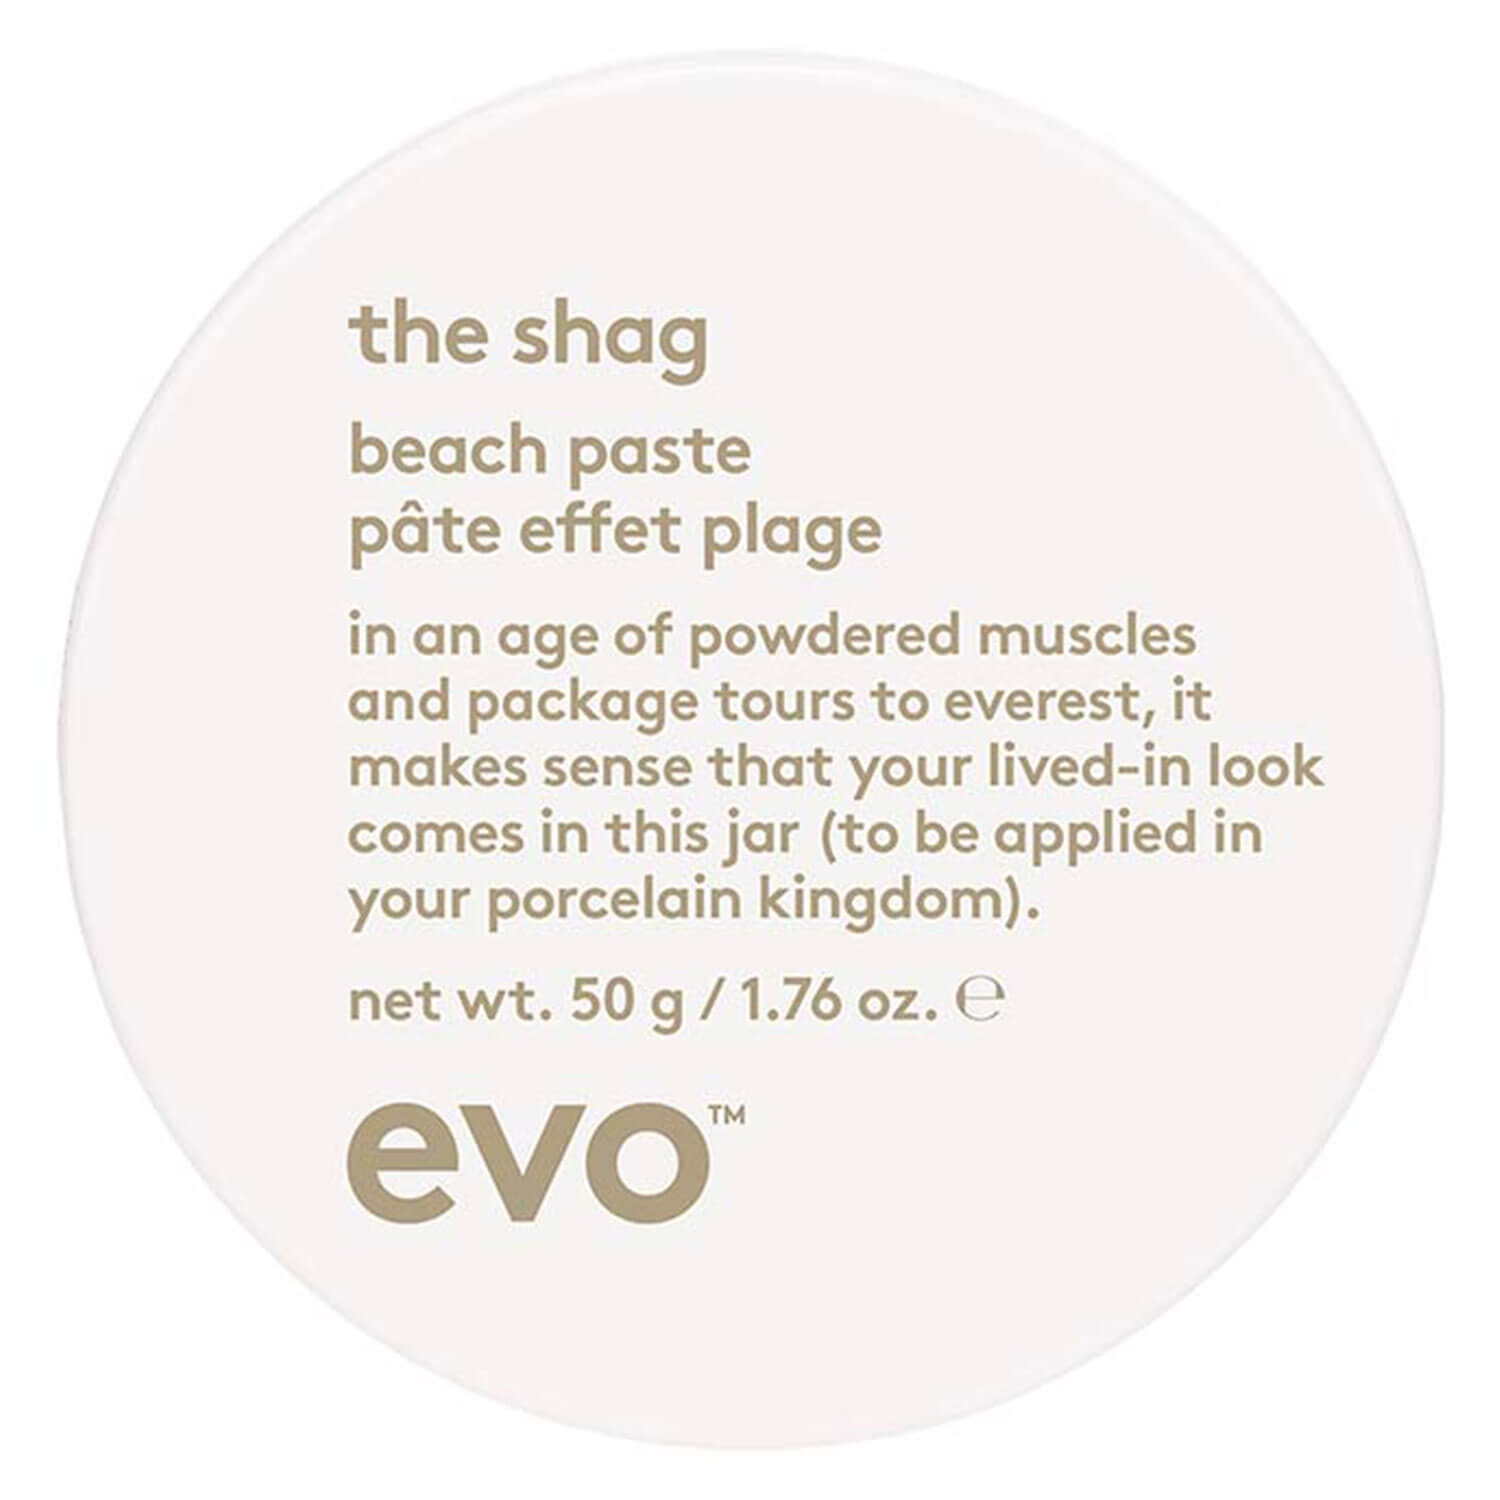 Produktbild von evo style - the shag beach paste